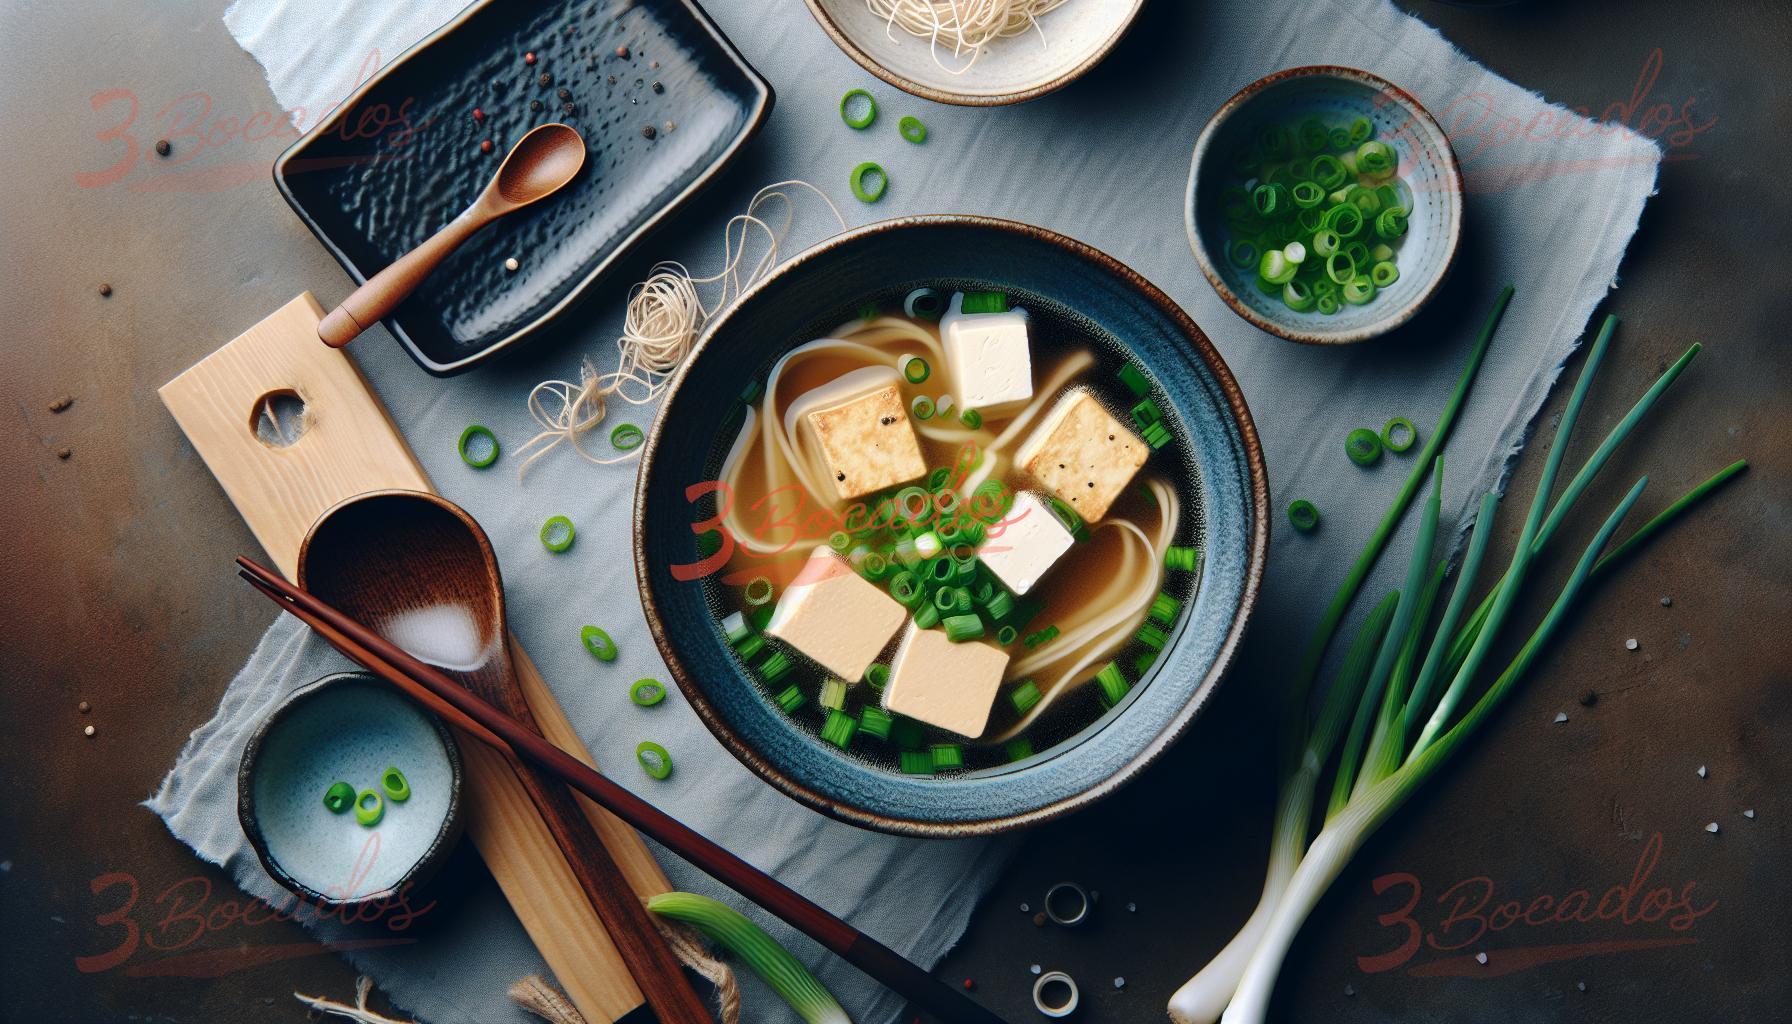 Bowl de Sopa de Miso con Tofu y cebolla verde